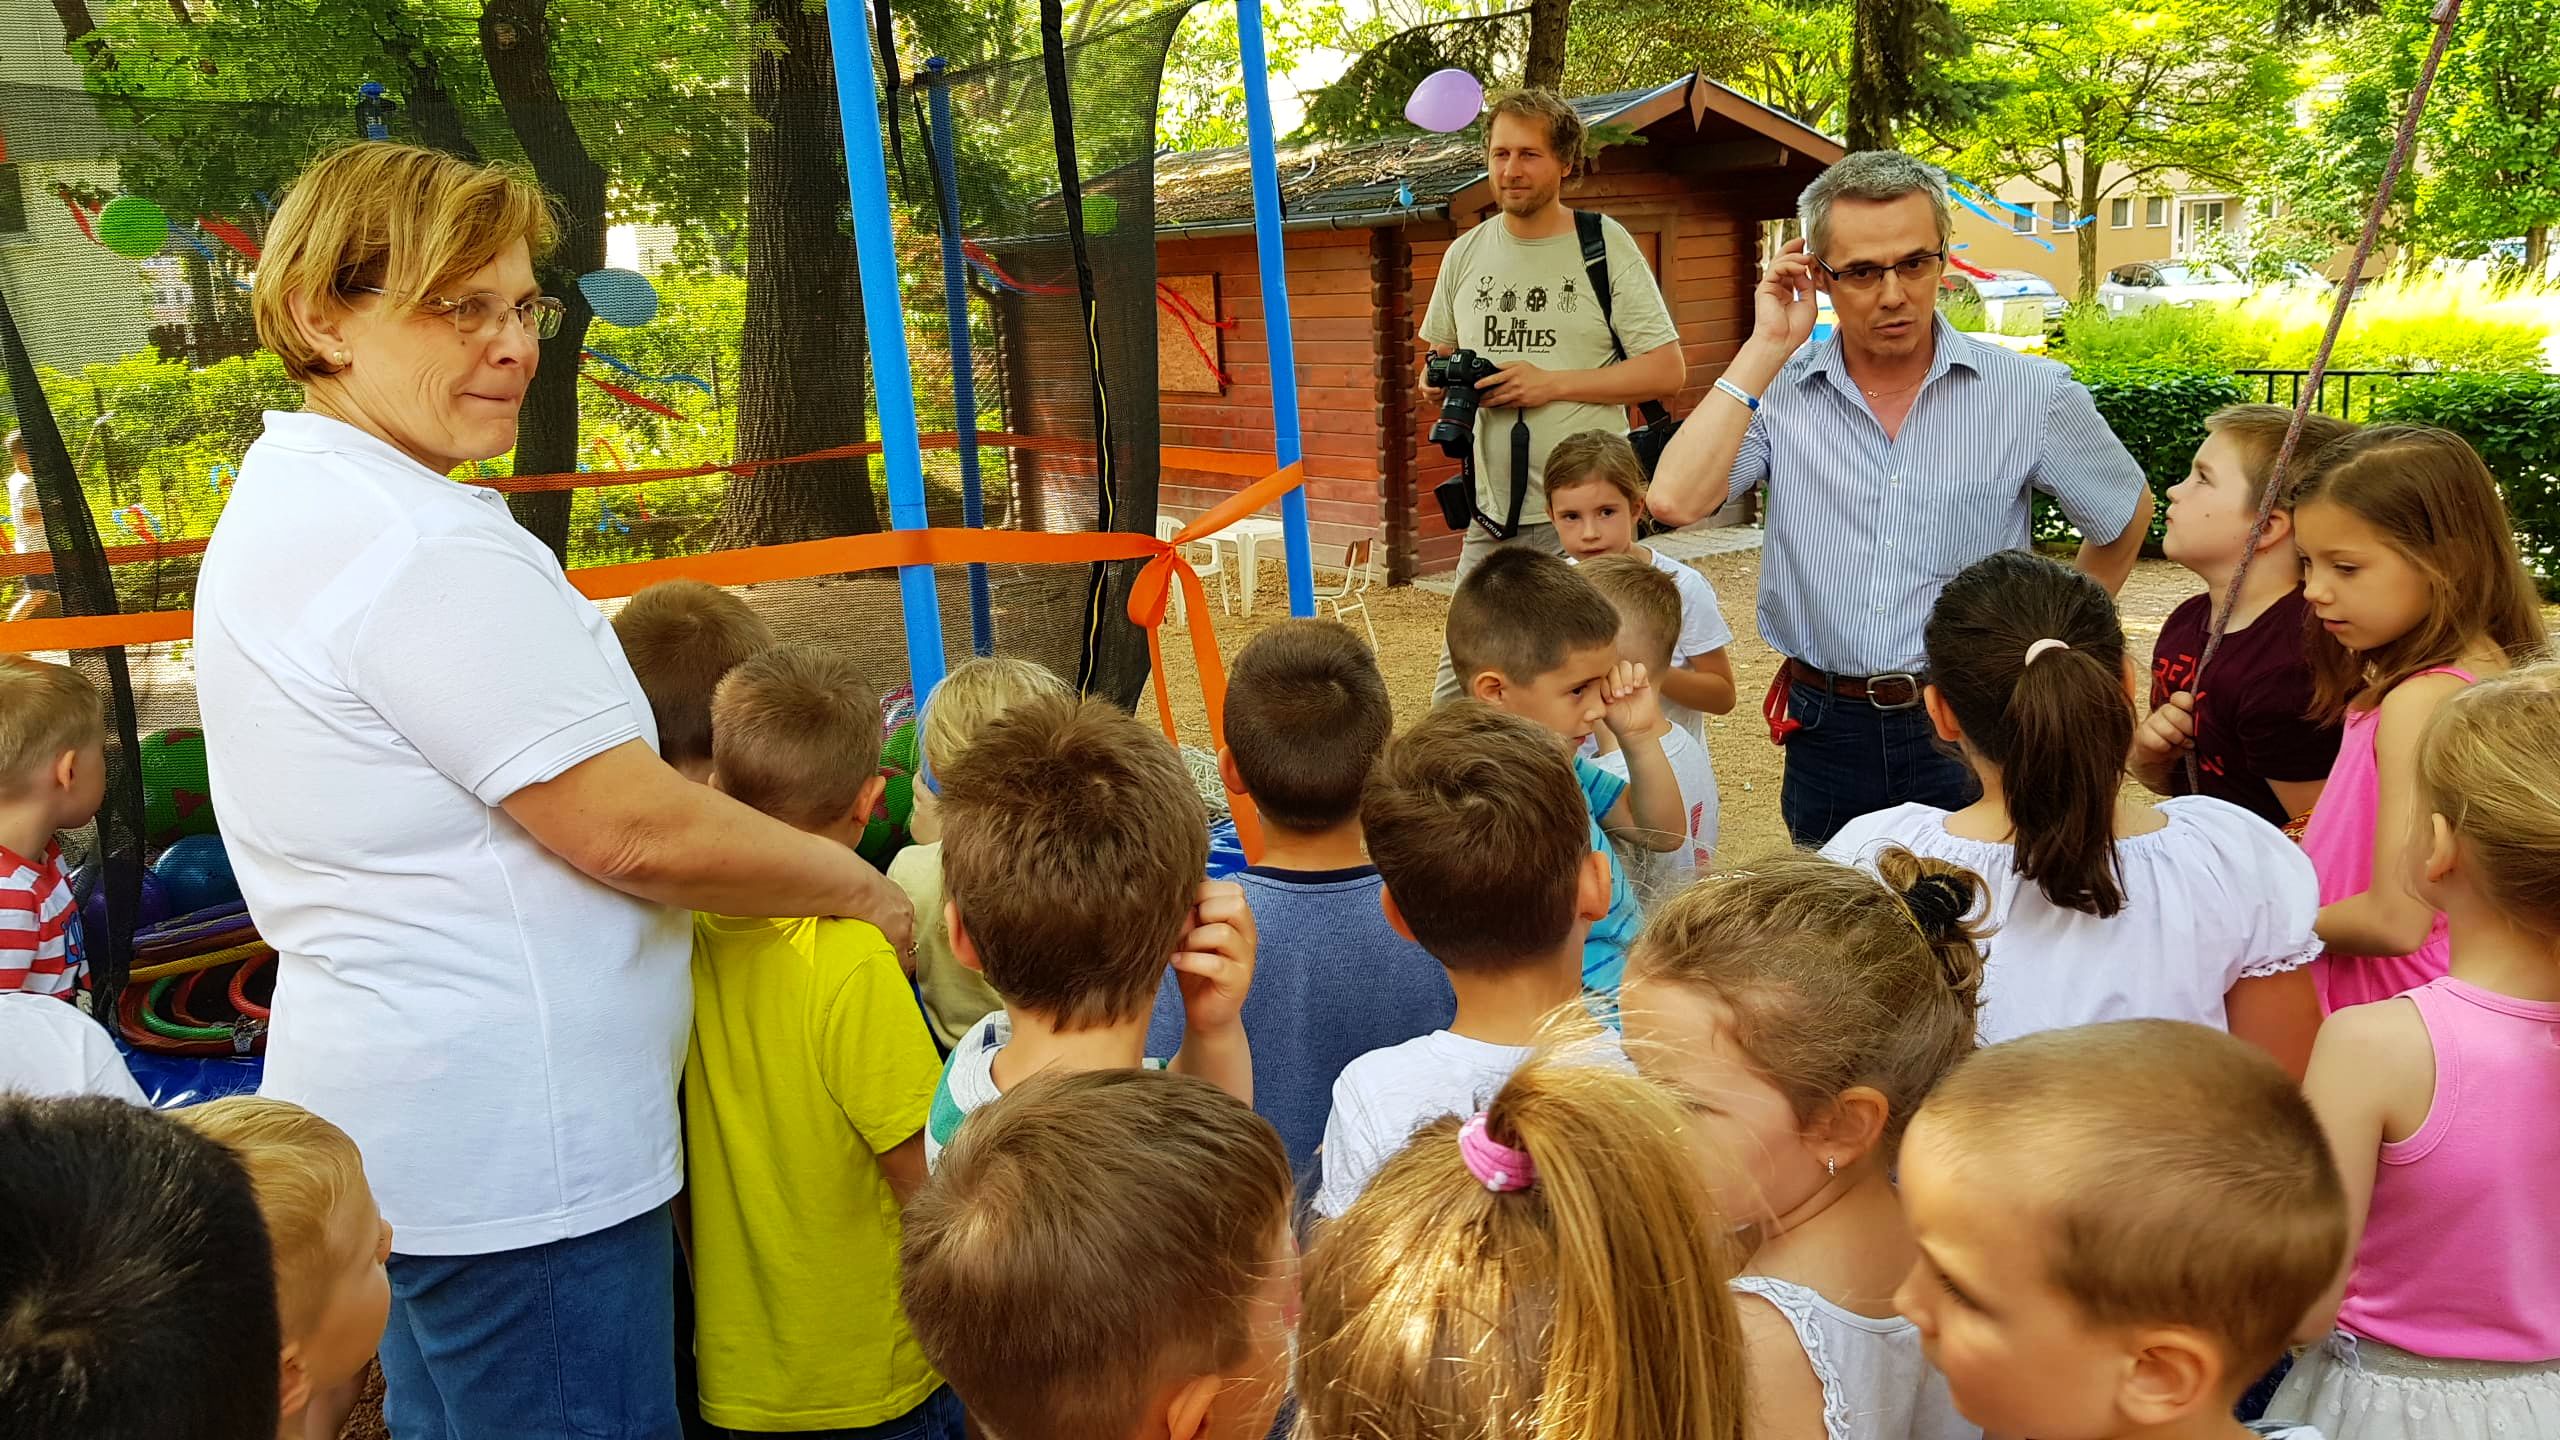 Juniális az Ybl Óvodában - új trambulint és sok játékot kaptak a gyerekek